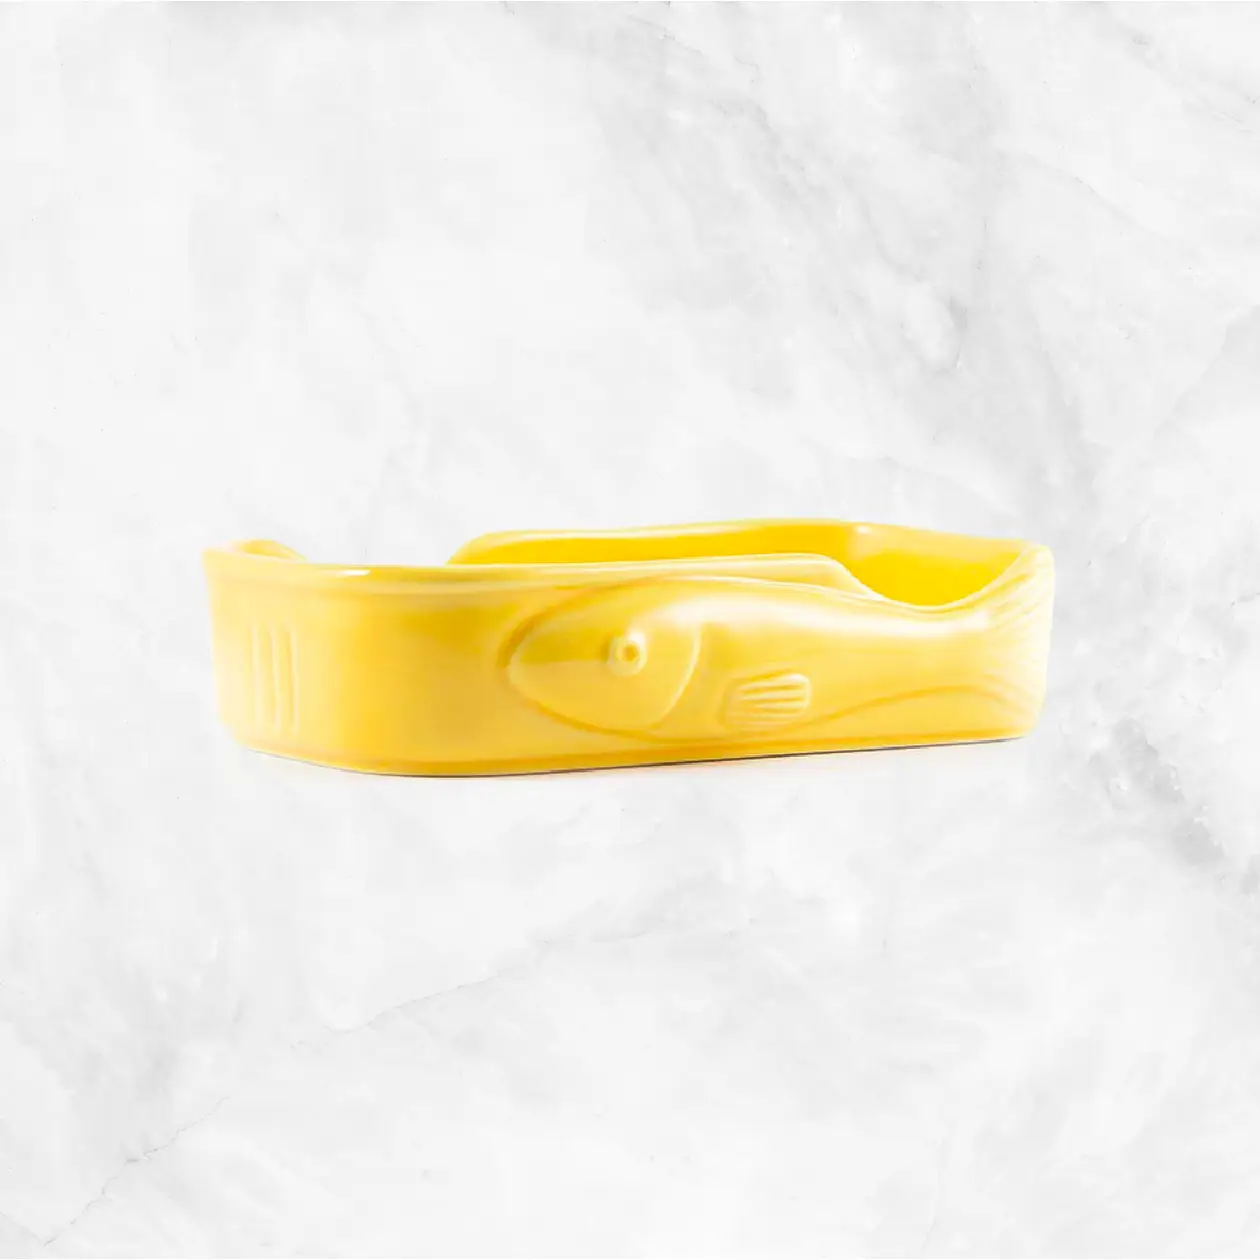 Yellow Conservas Ceramic Delivery